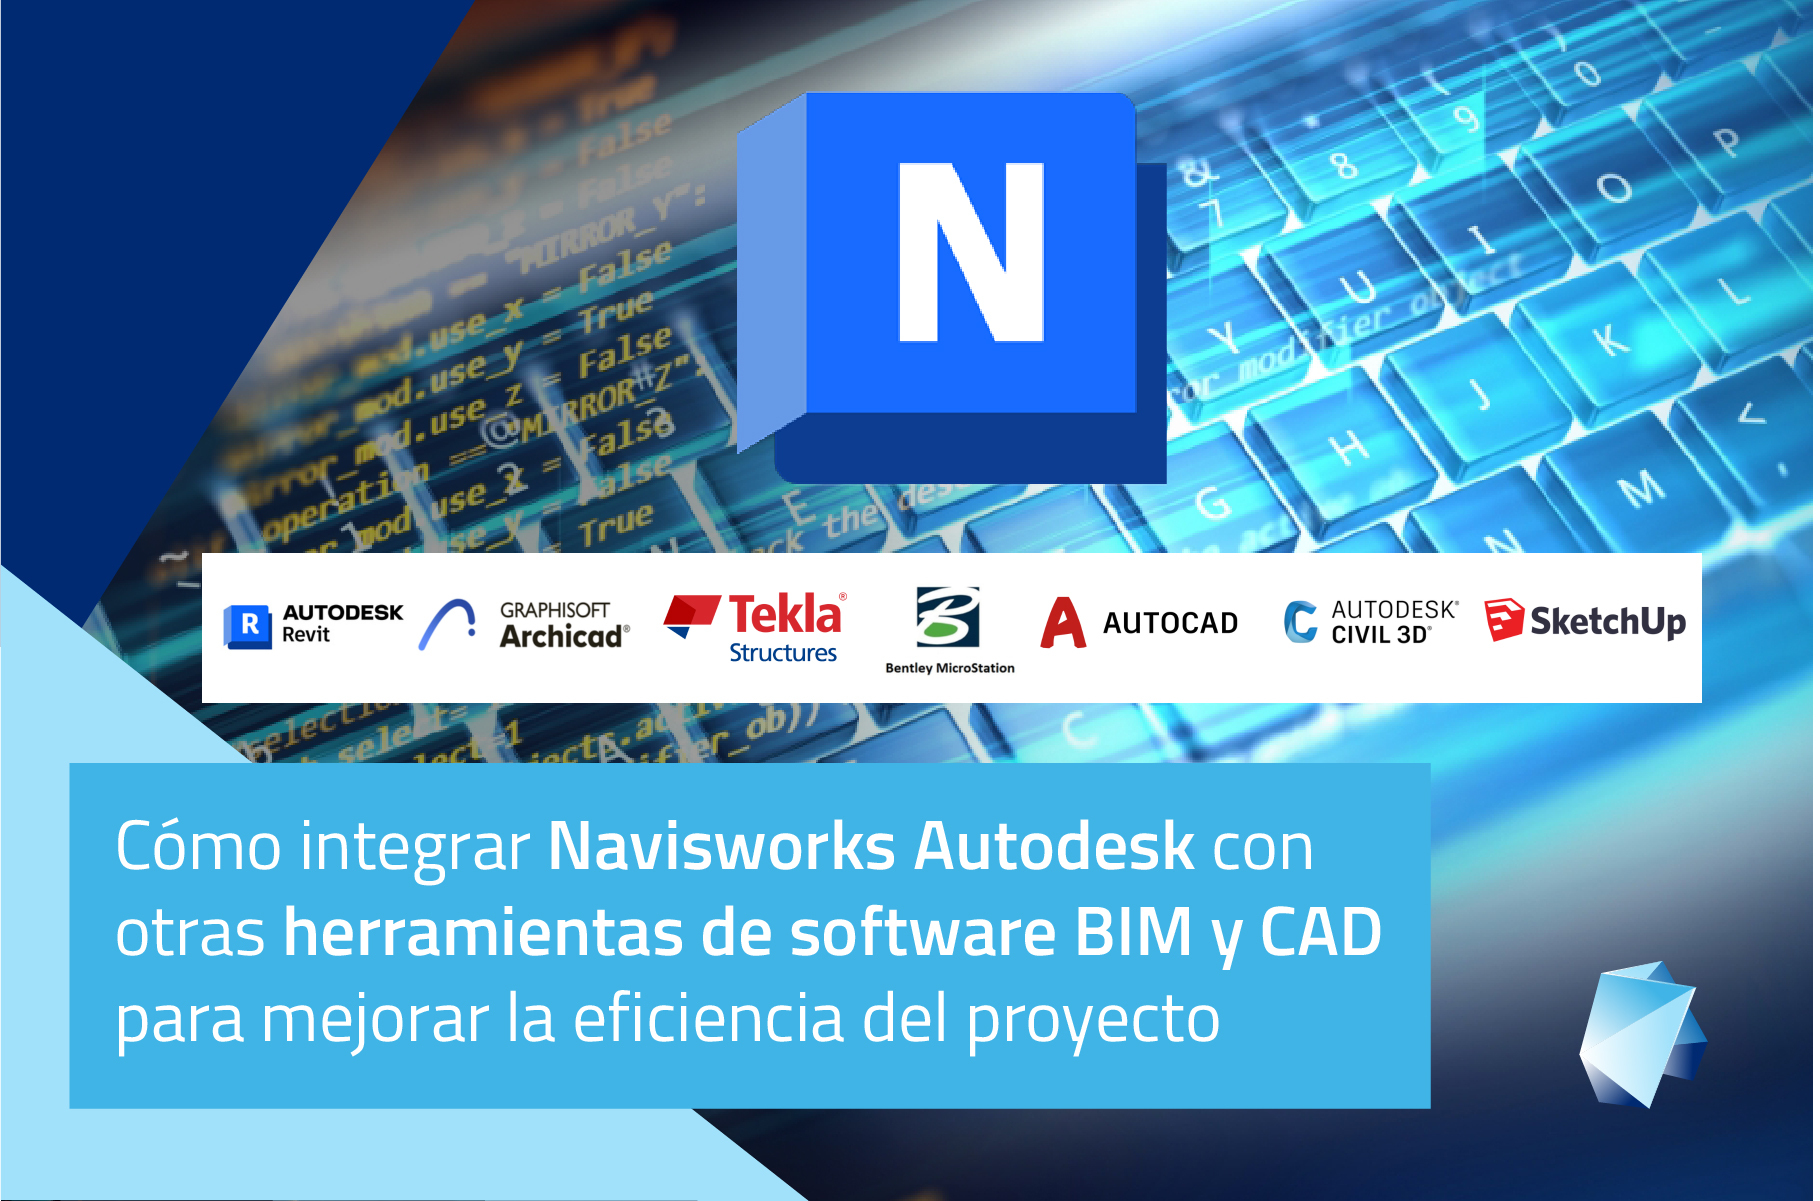 Cómo integrar Navisworks Autodesk con otras herramientas de software BIM y CAD para mejorar la eficiencia del proyecto